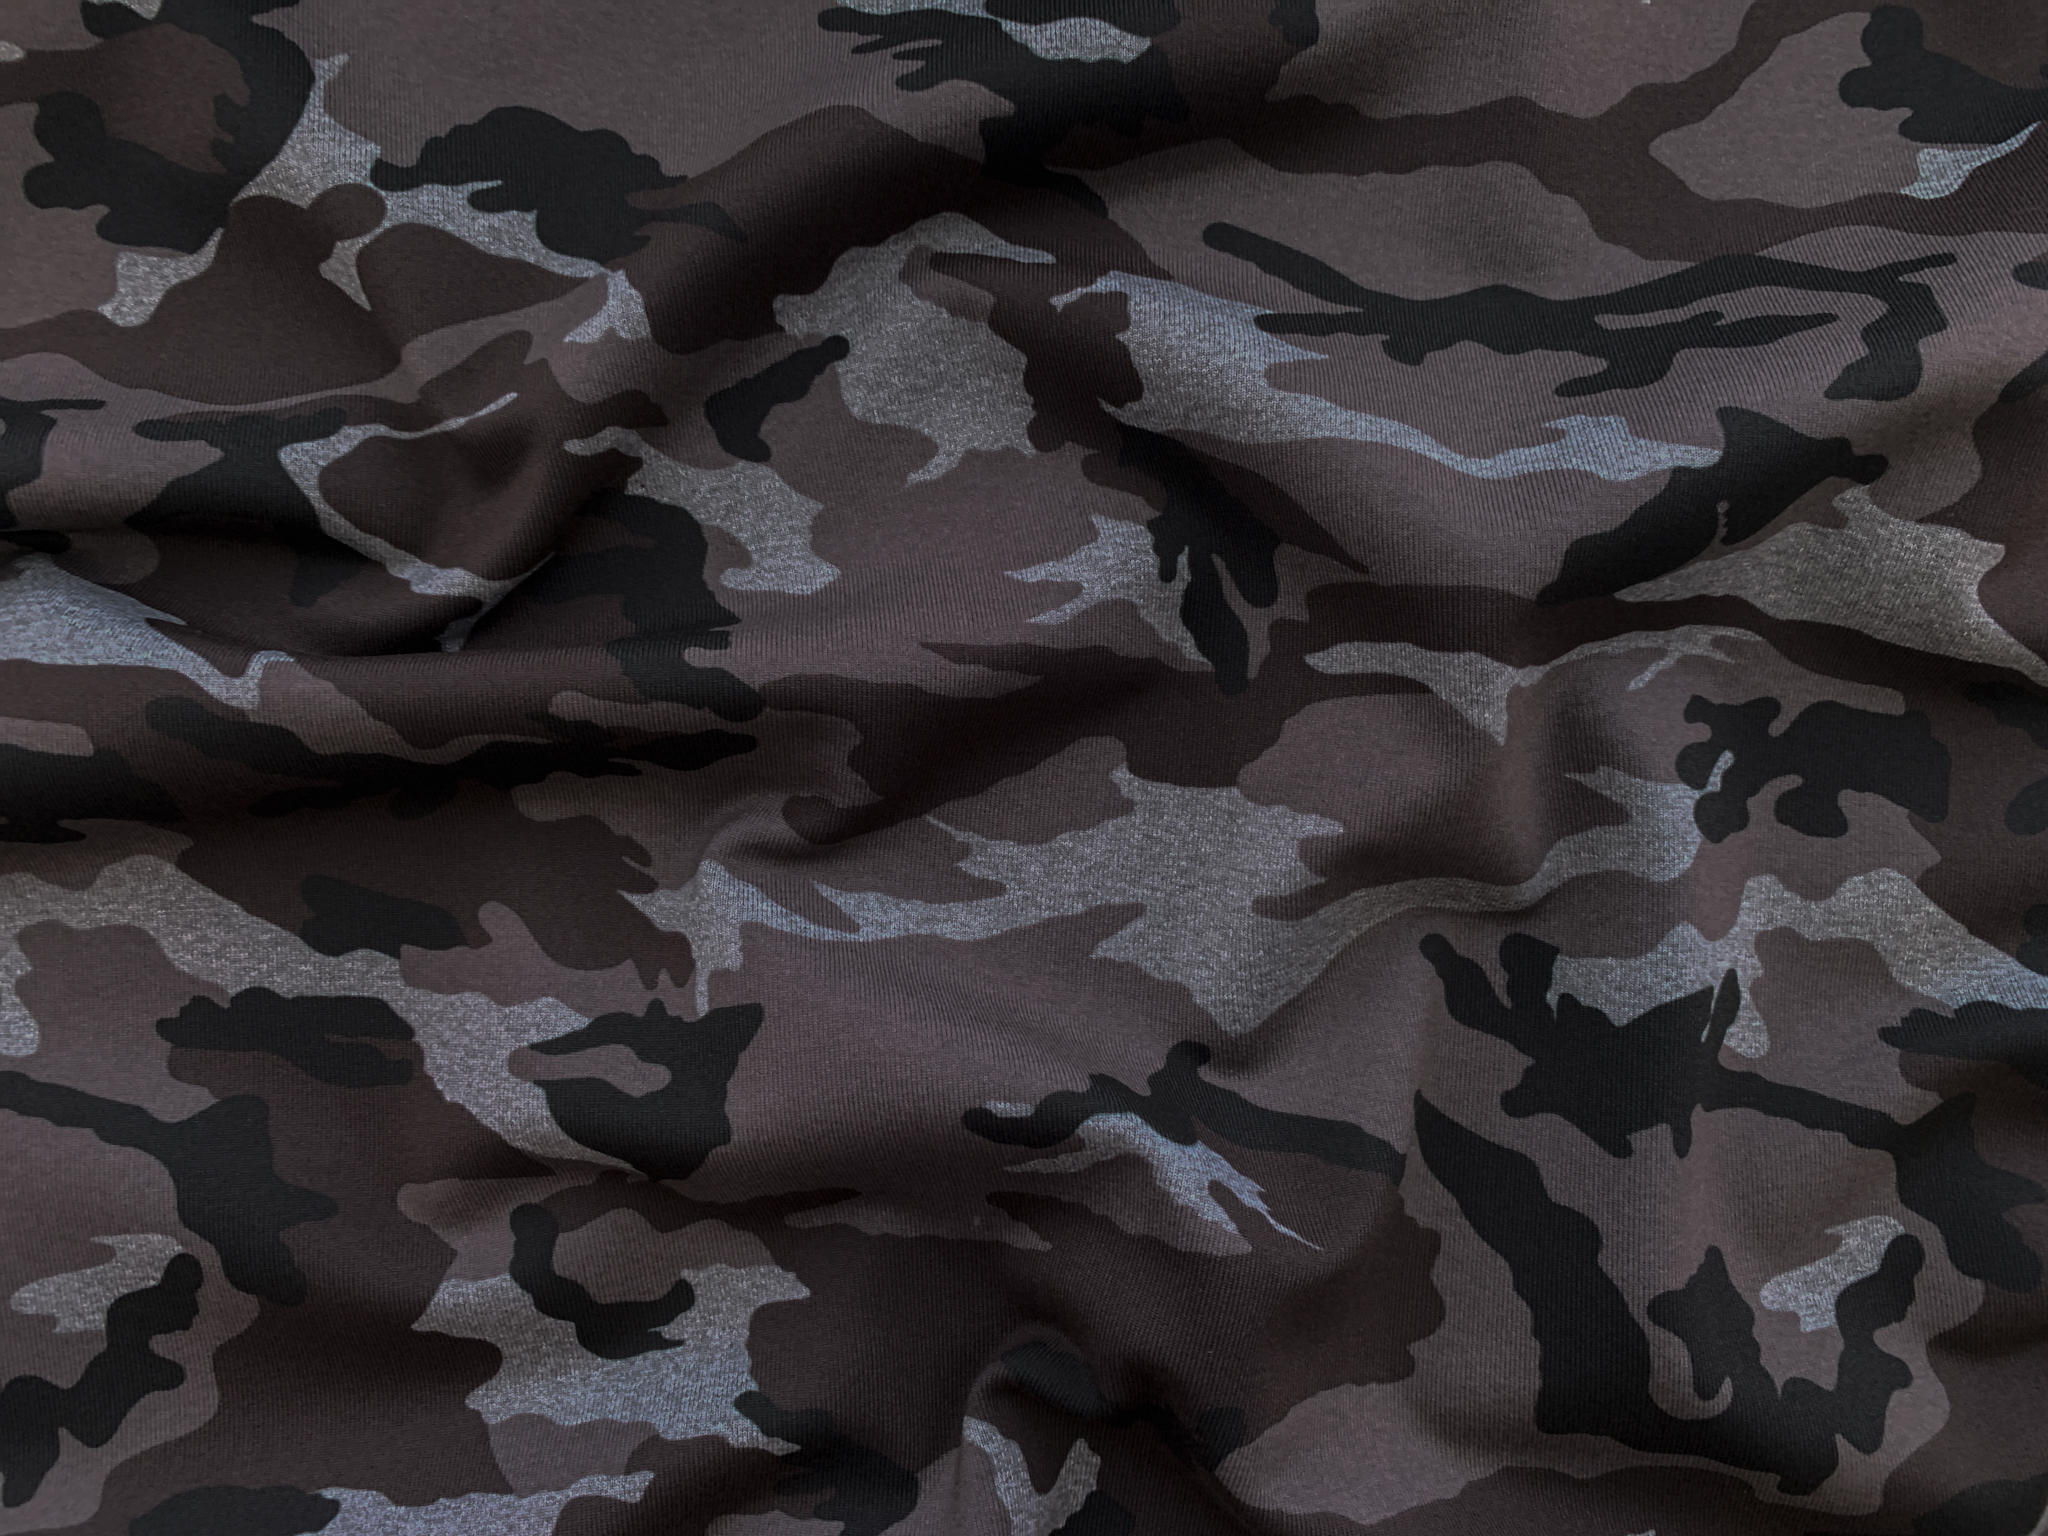 Incognito Grey Camoflague Army Fabric by Dear Stella - modeS4u